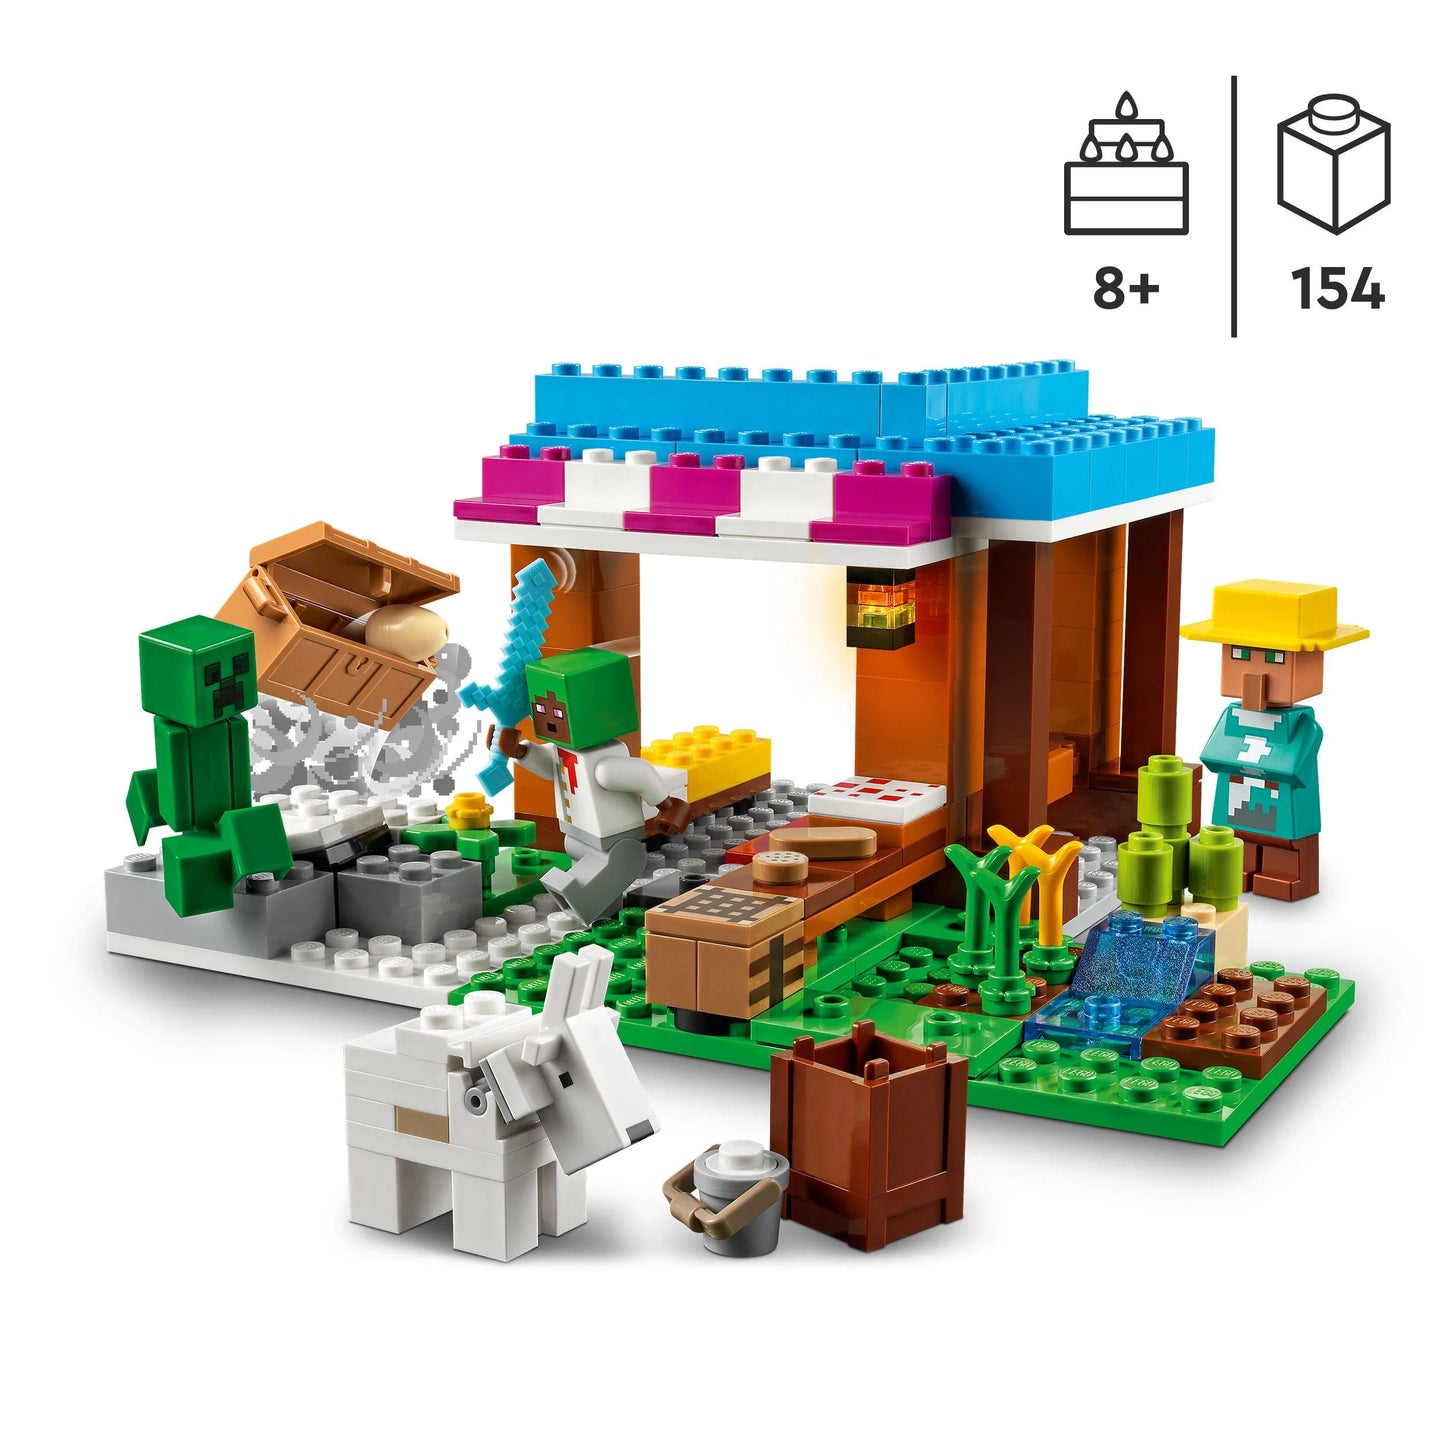 De bakkerij-LEGO Minecraft